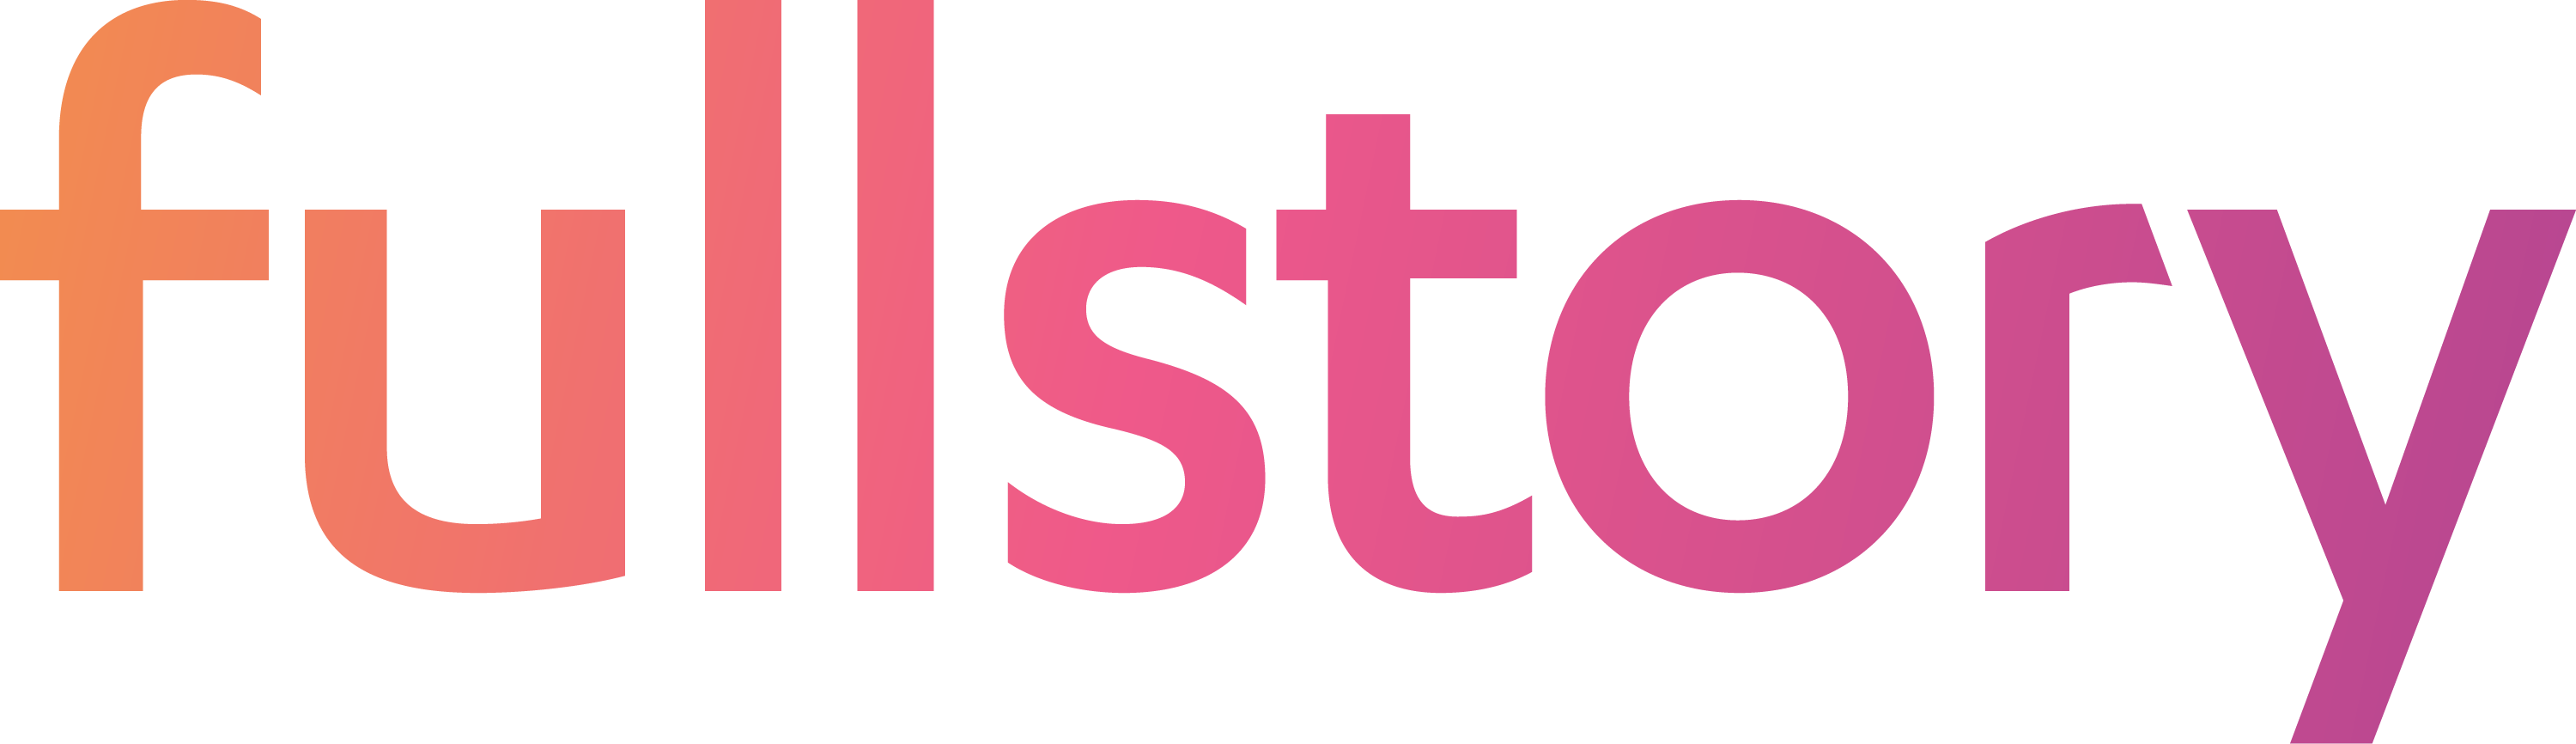 fullstory logo